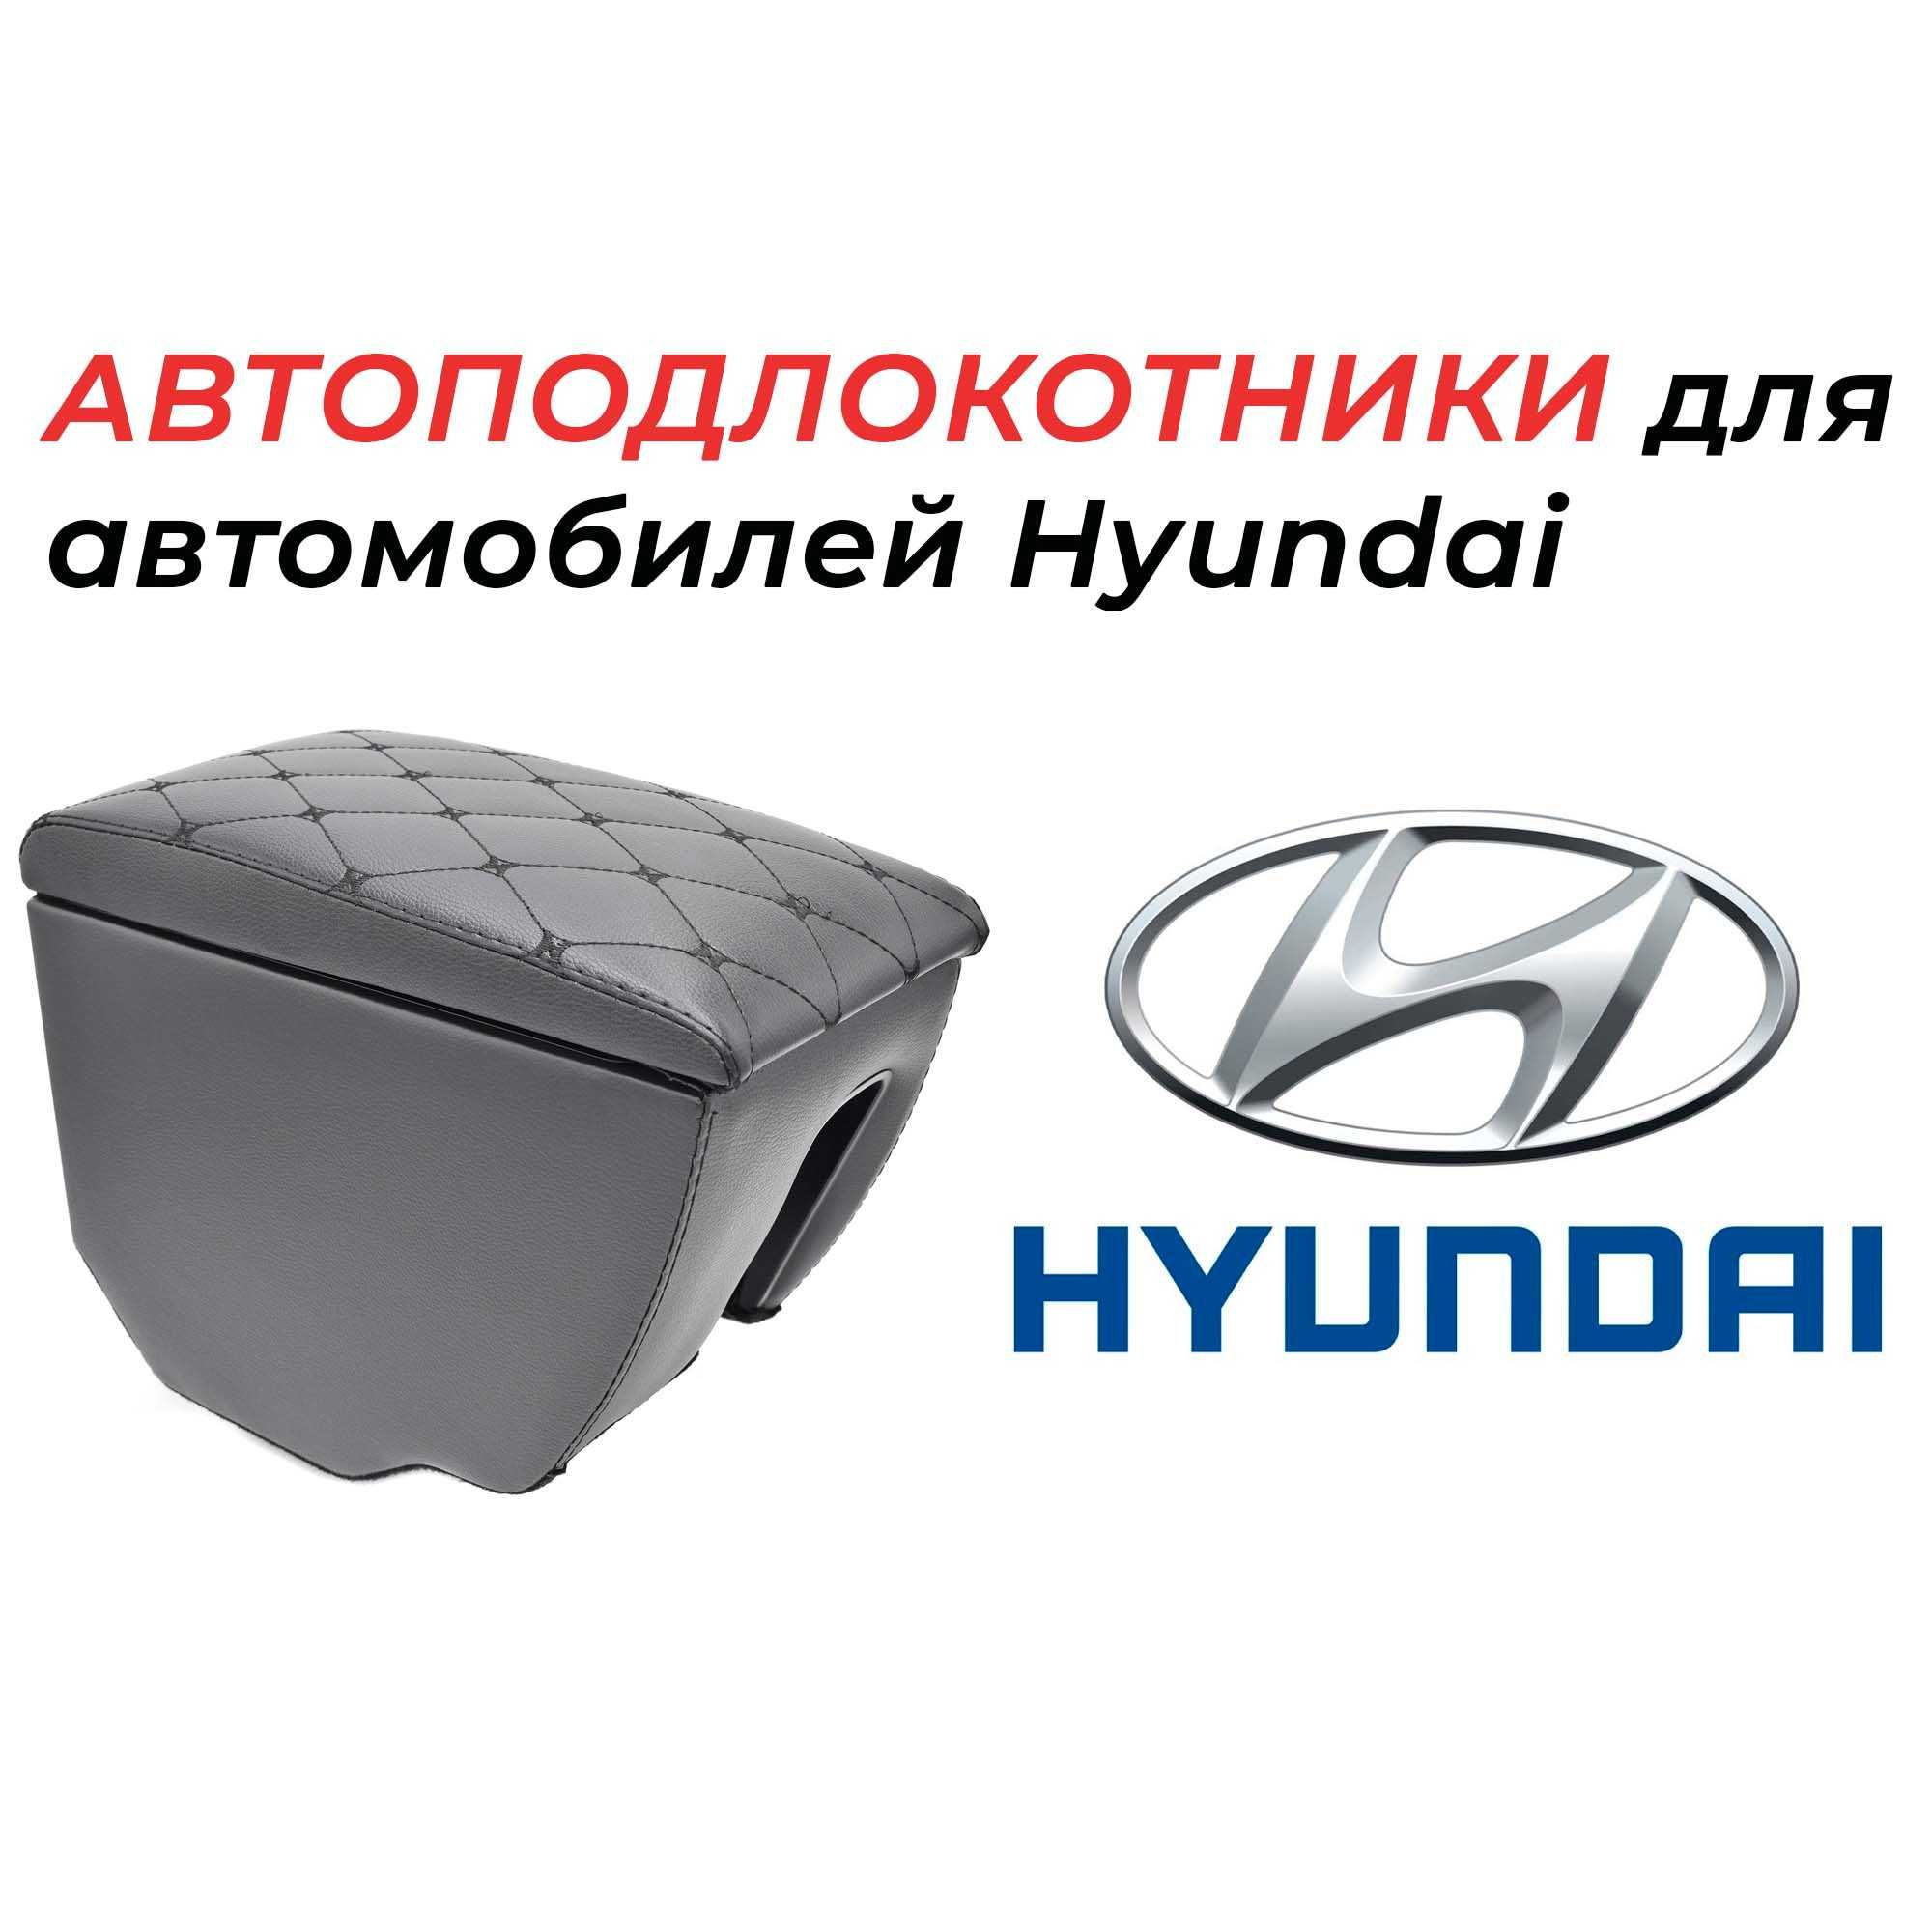 Подлокотники для автомобилей Hyundai производства России